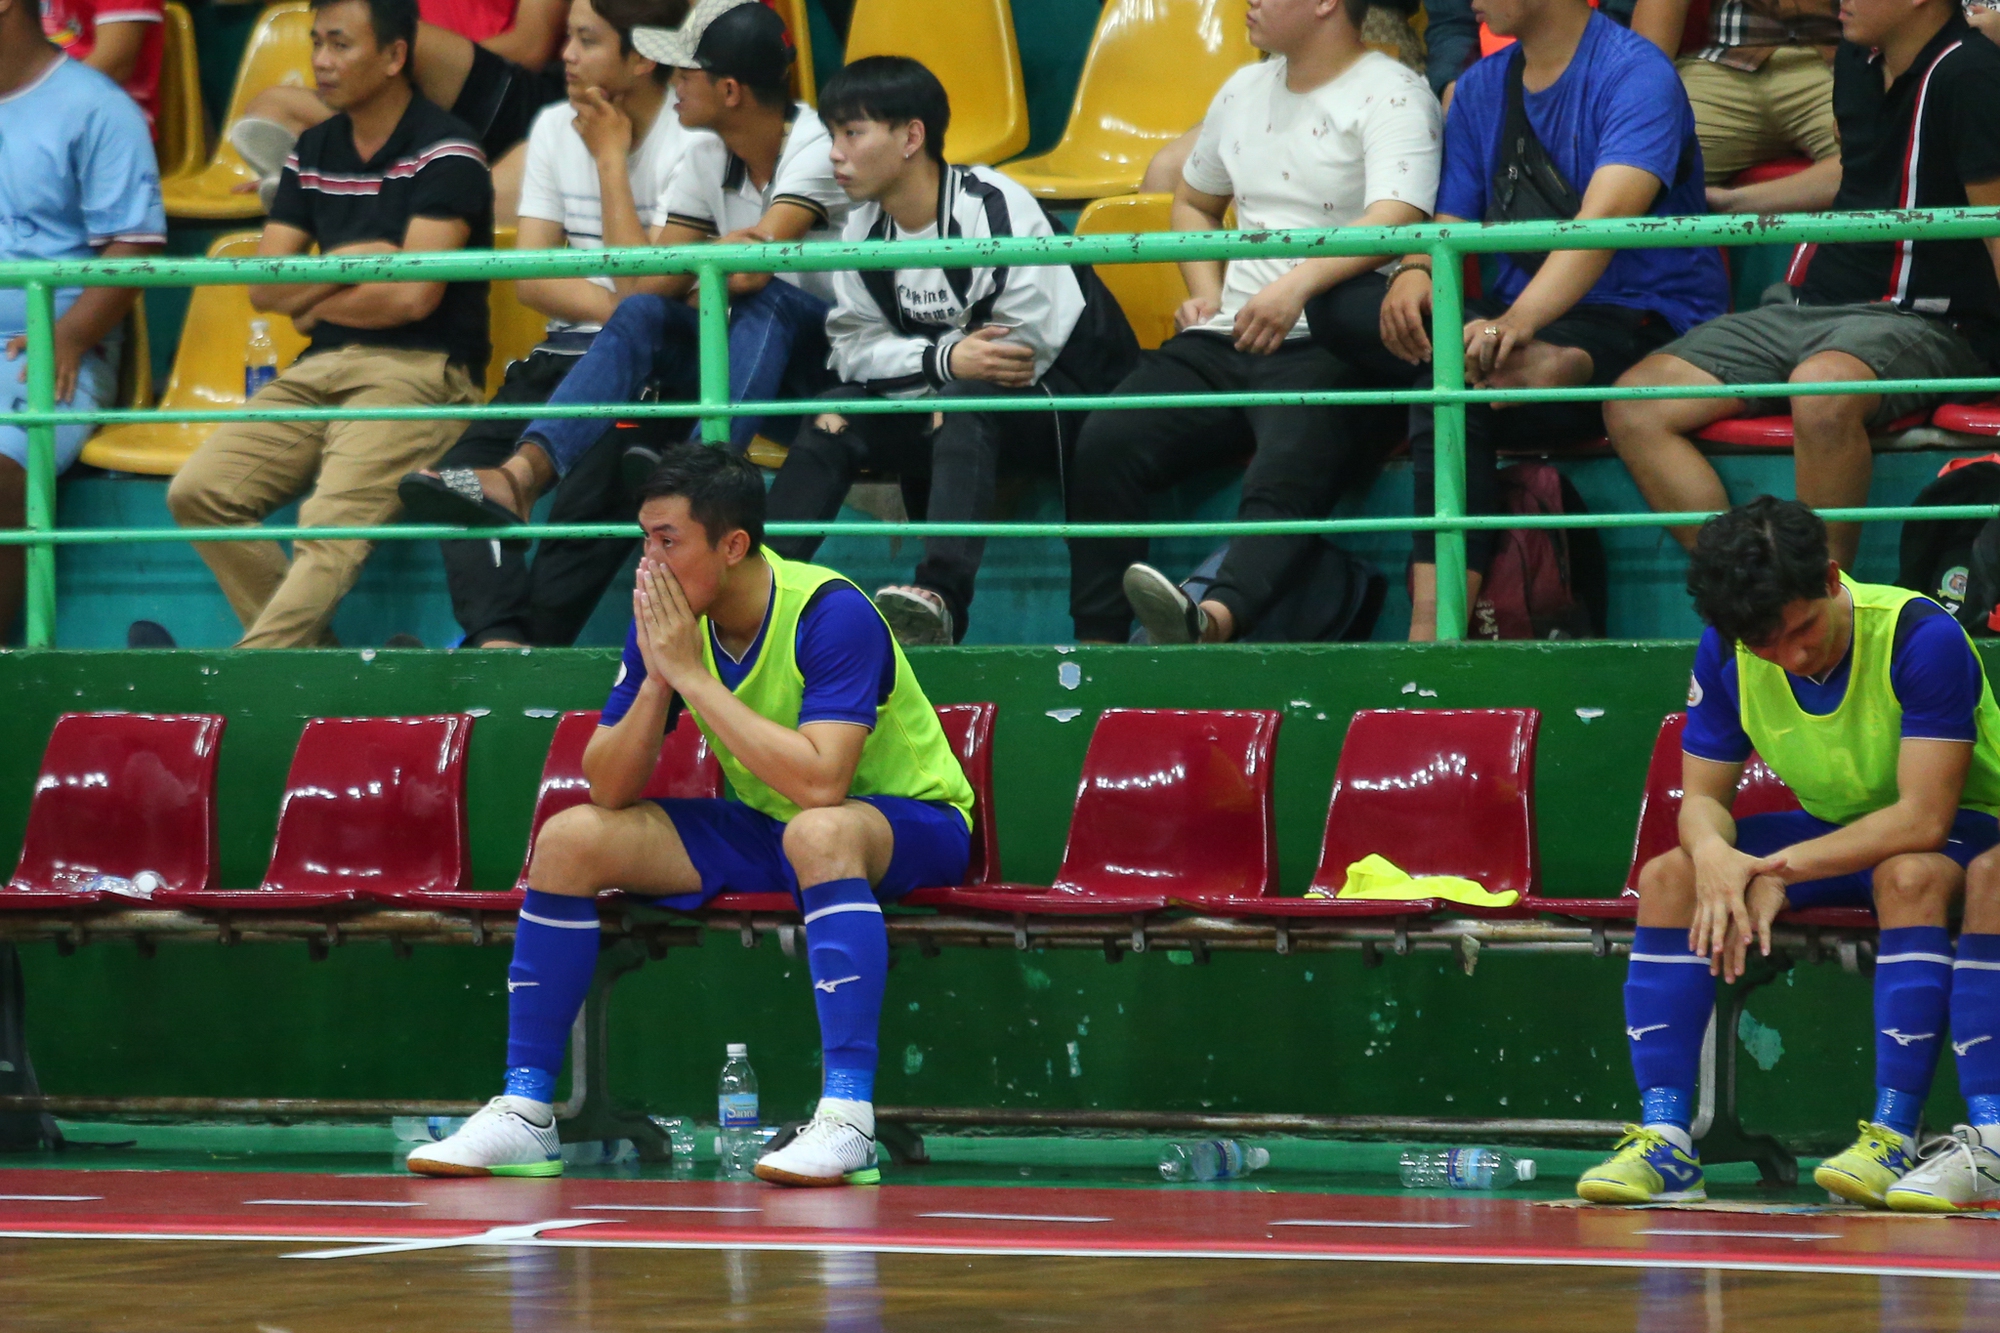 Hồ Văn Ý và cầu thủ futsal Thái Sơn Nam buồn bã khi về nhì ở Cúp Quốc gia - Ảnh 3.